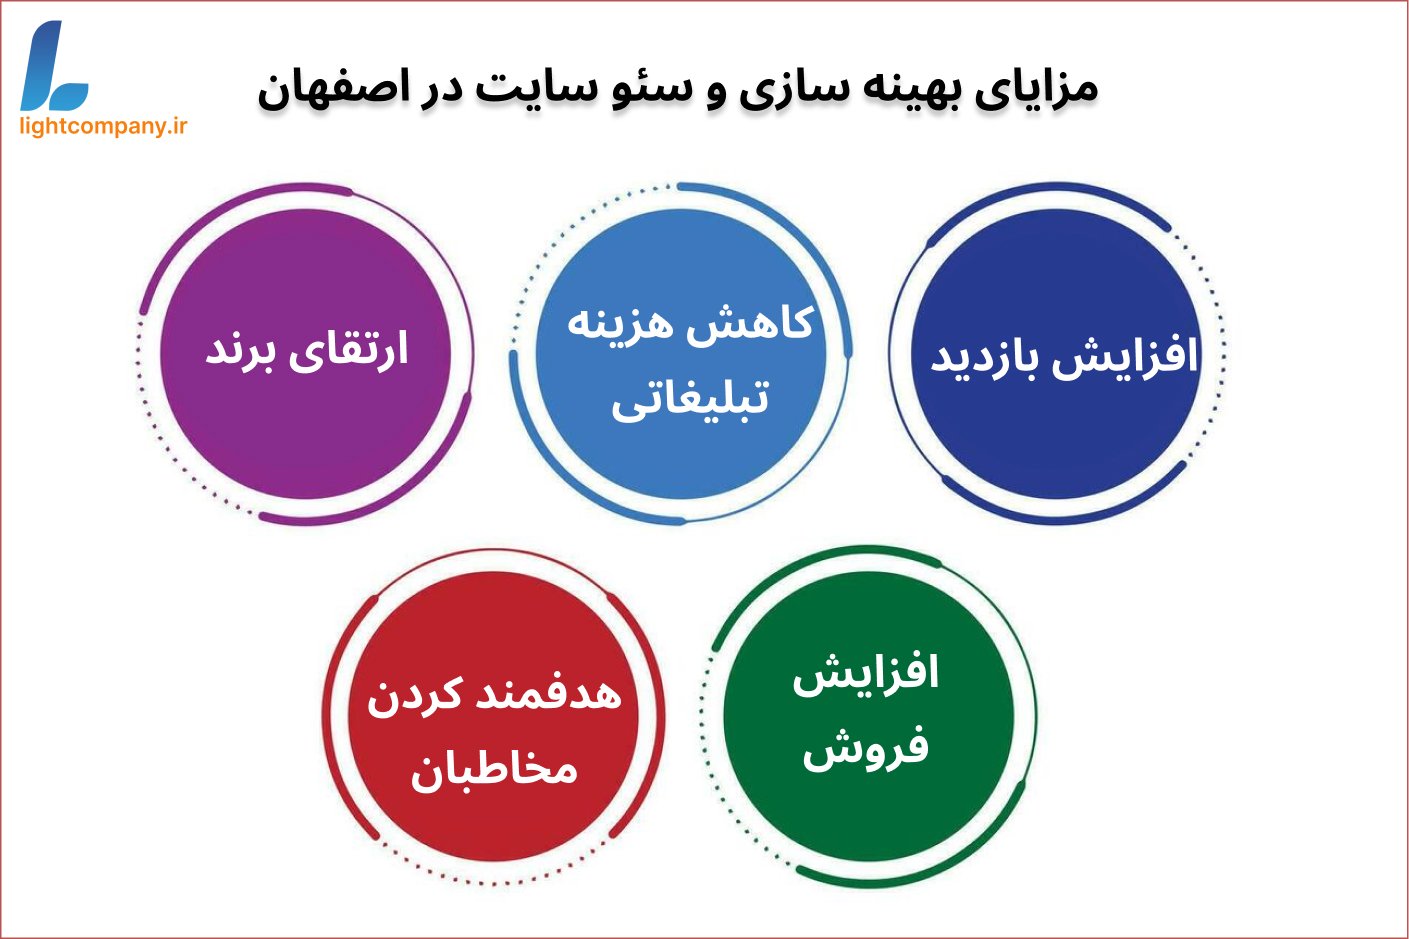 بهینه سازی و سئو سایت در اصفهان